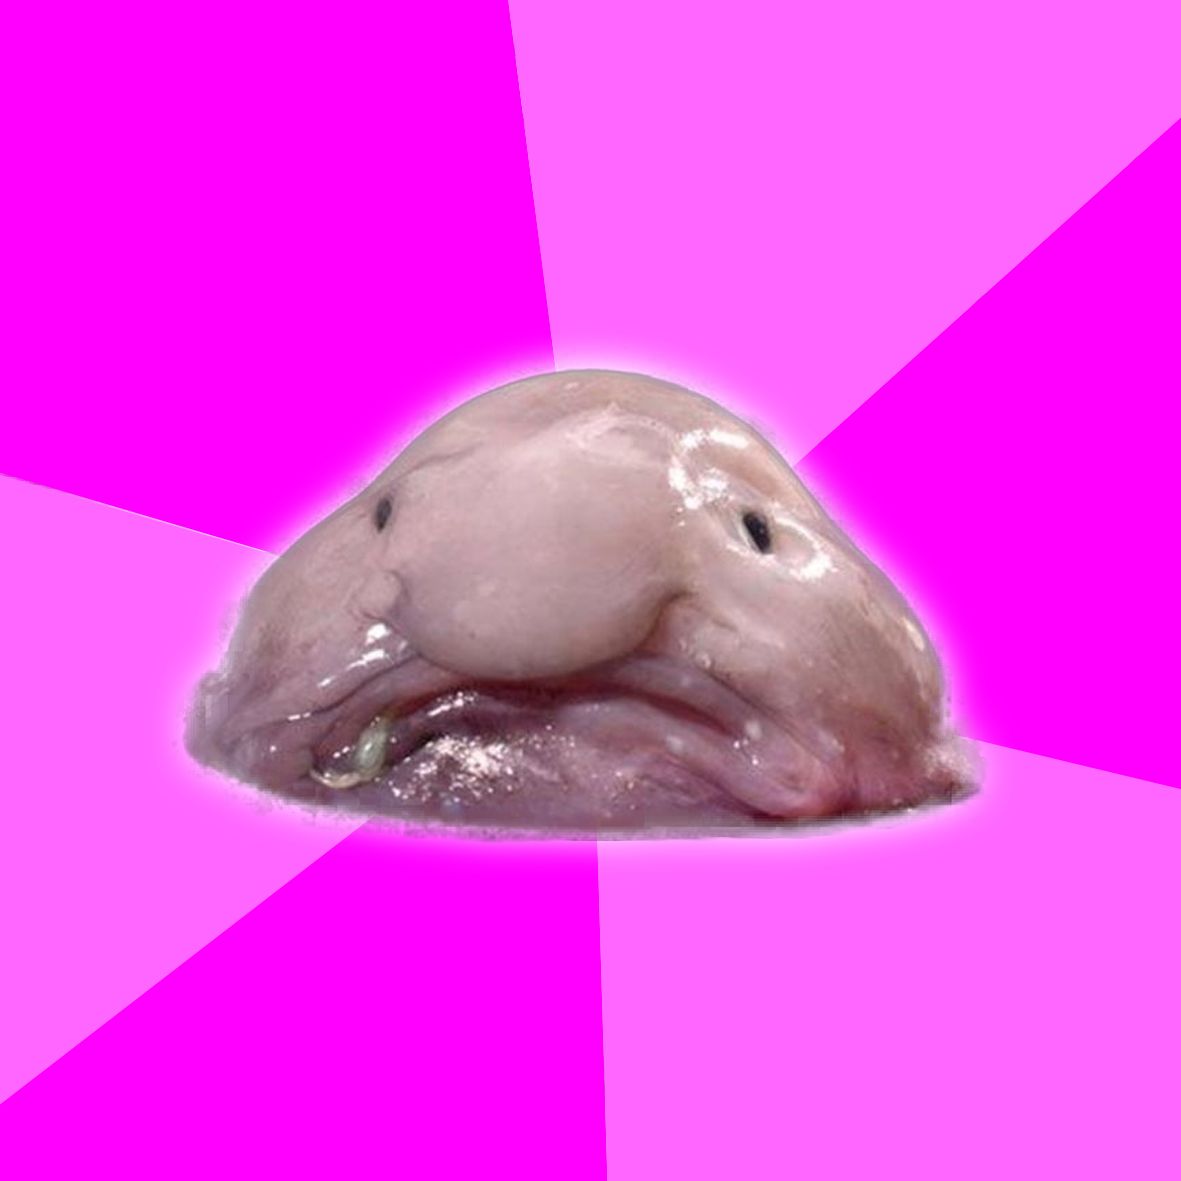 blobfish meme｜TikTok Search